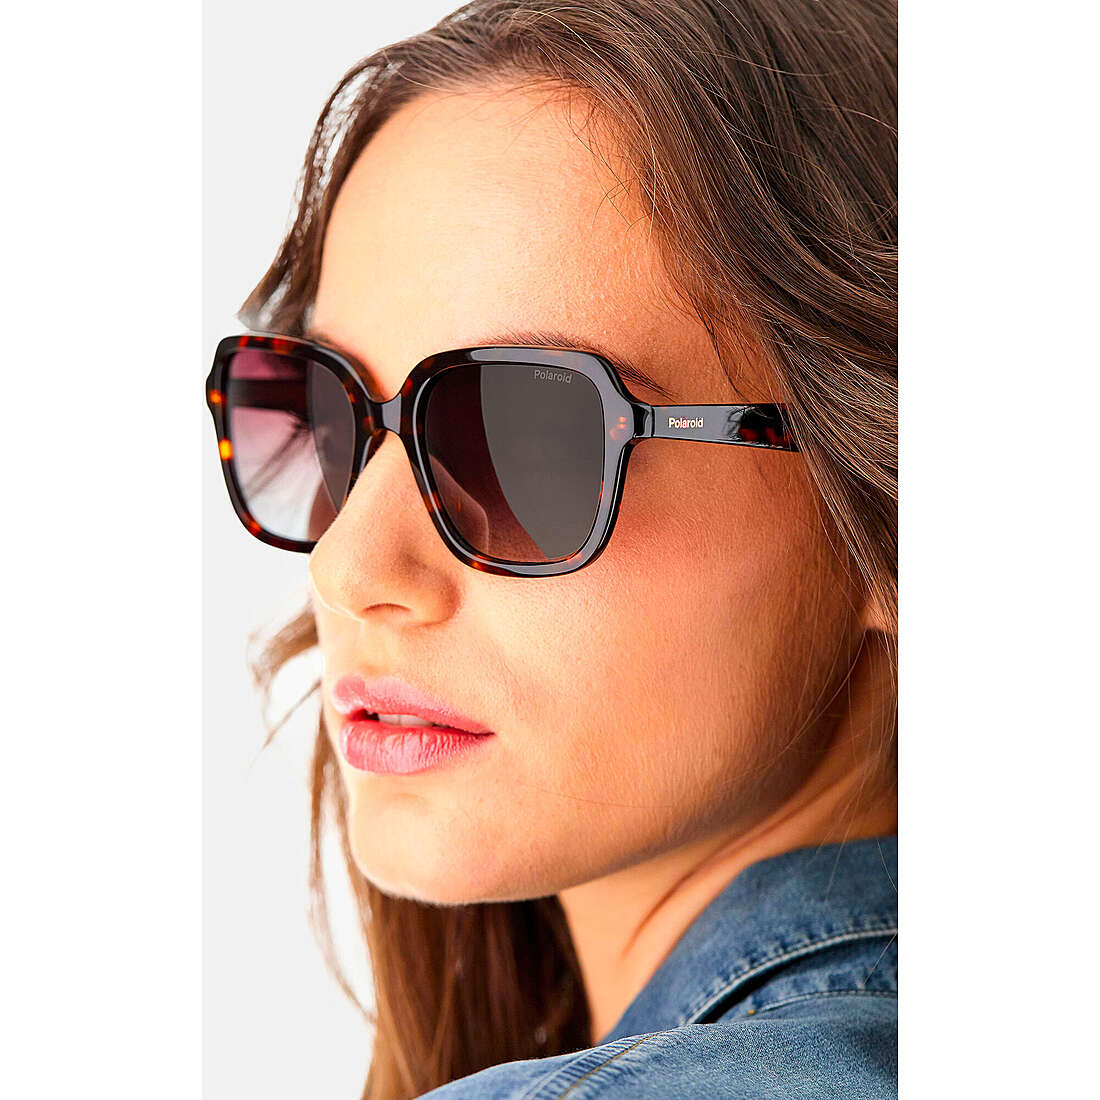 Polaroid occhiali da sole Essential donna 20341108653LA indosso